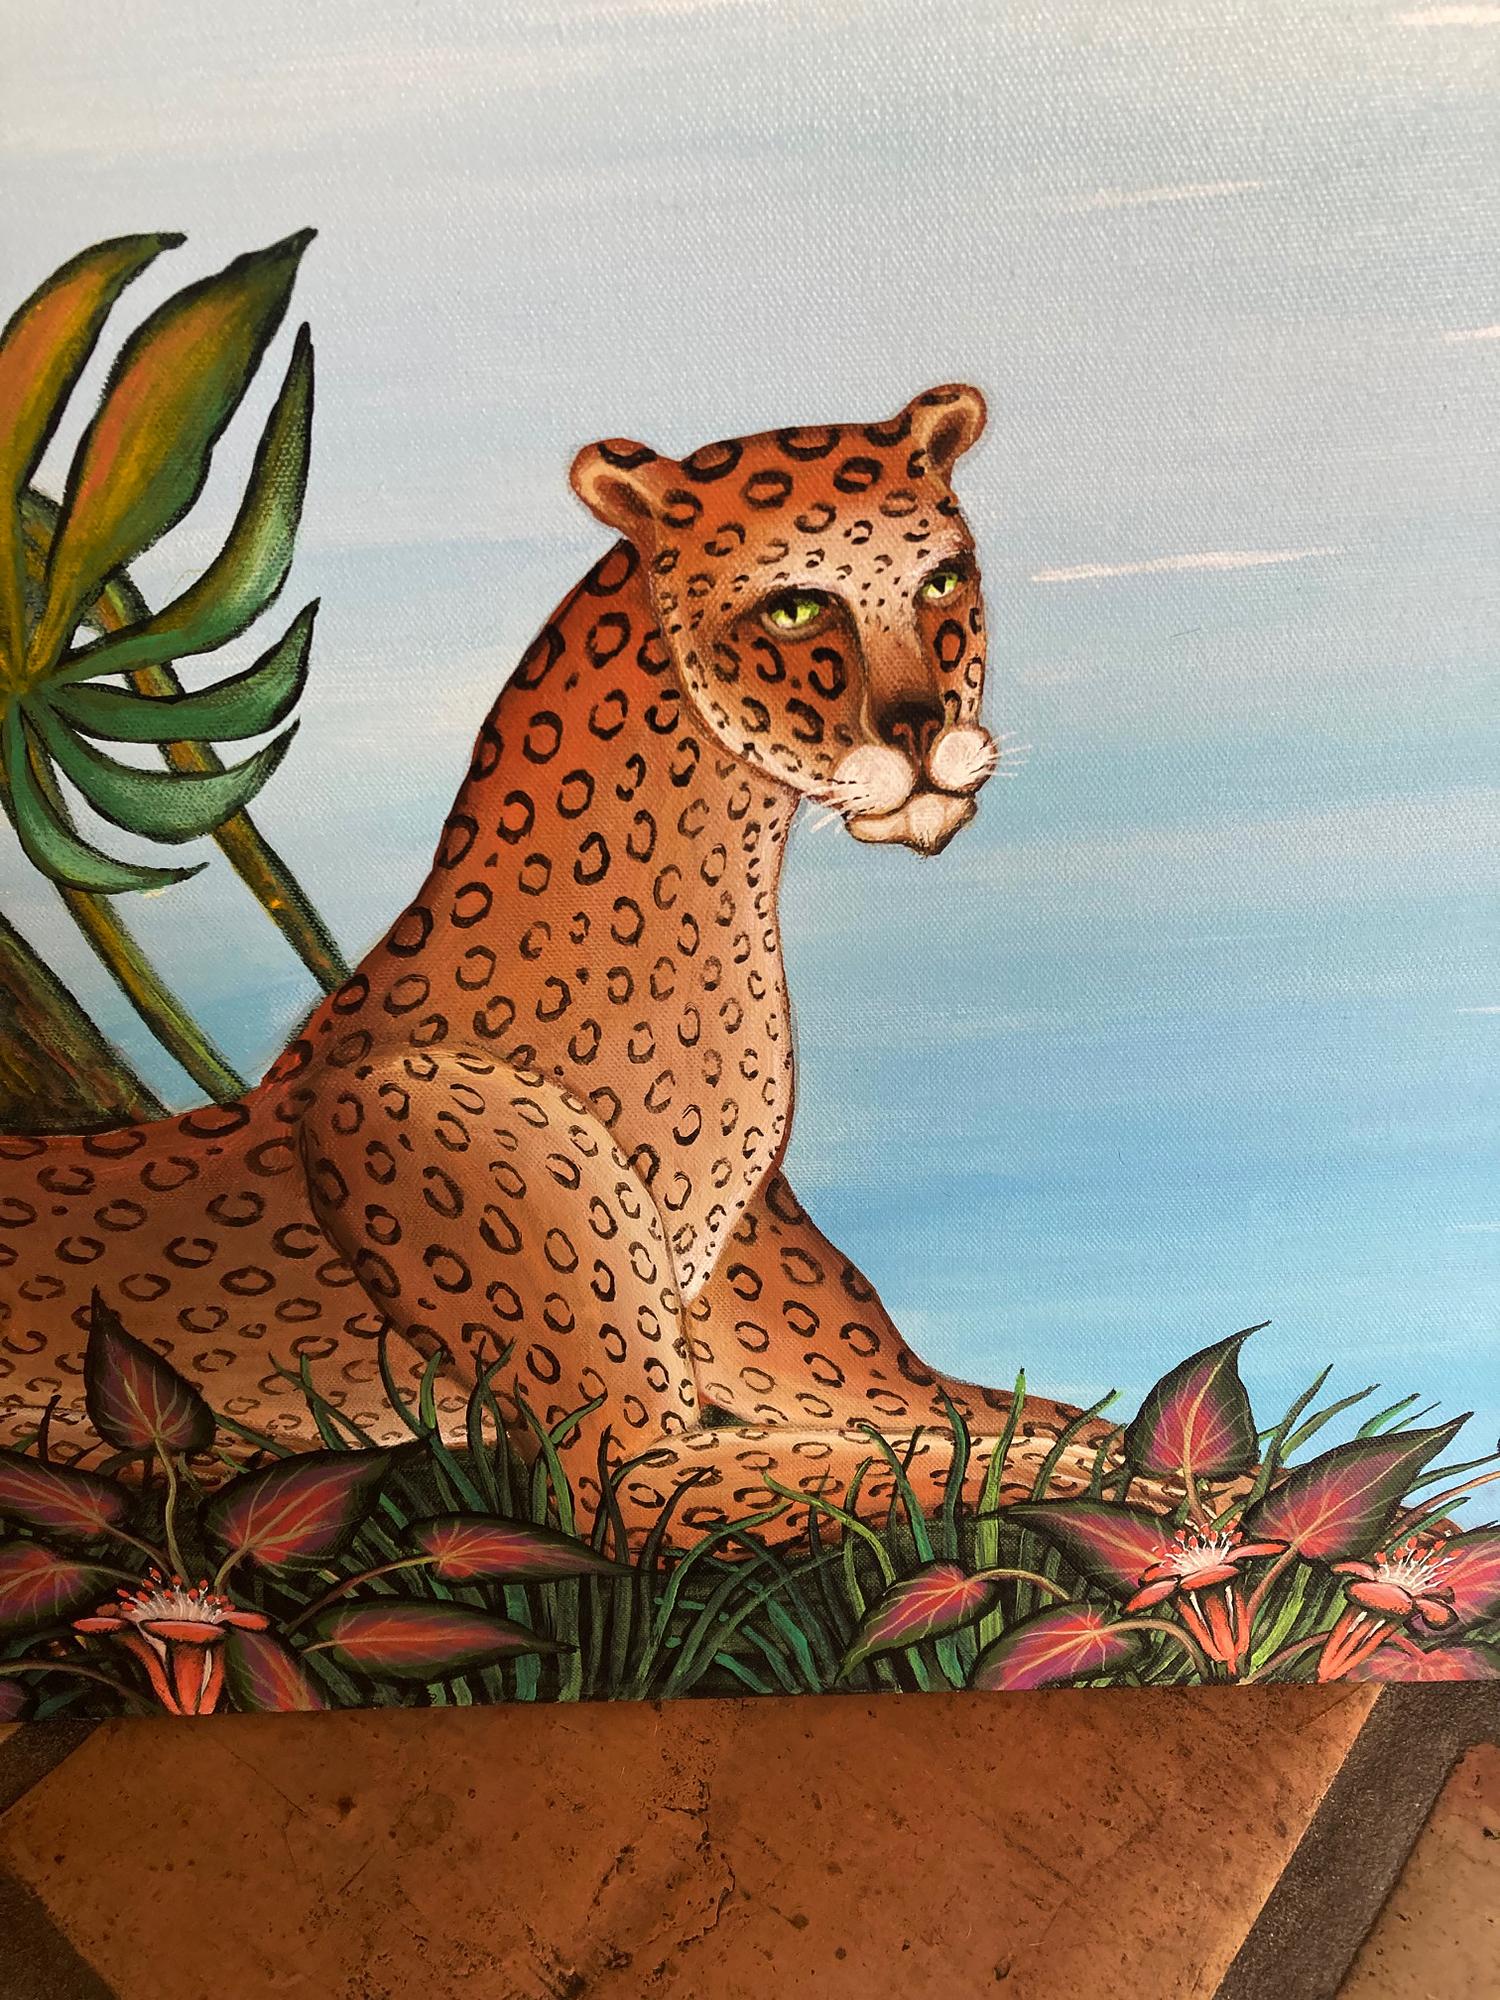 Silent Paradise – Geparden, Zebras, Panther und Hippo  – Painting von Gustavo Novoa